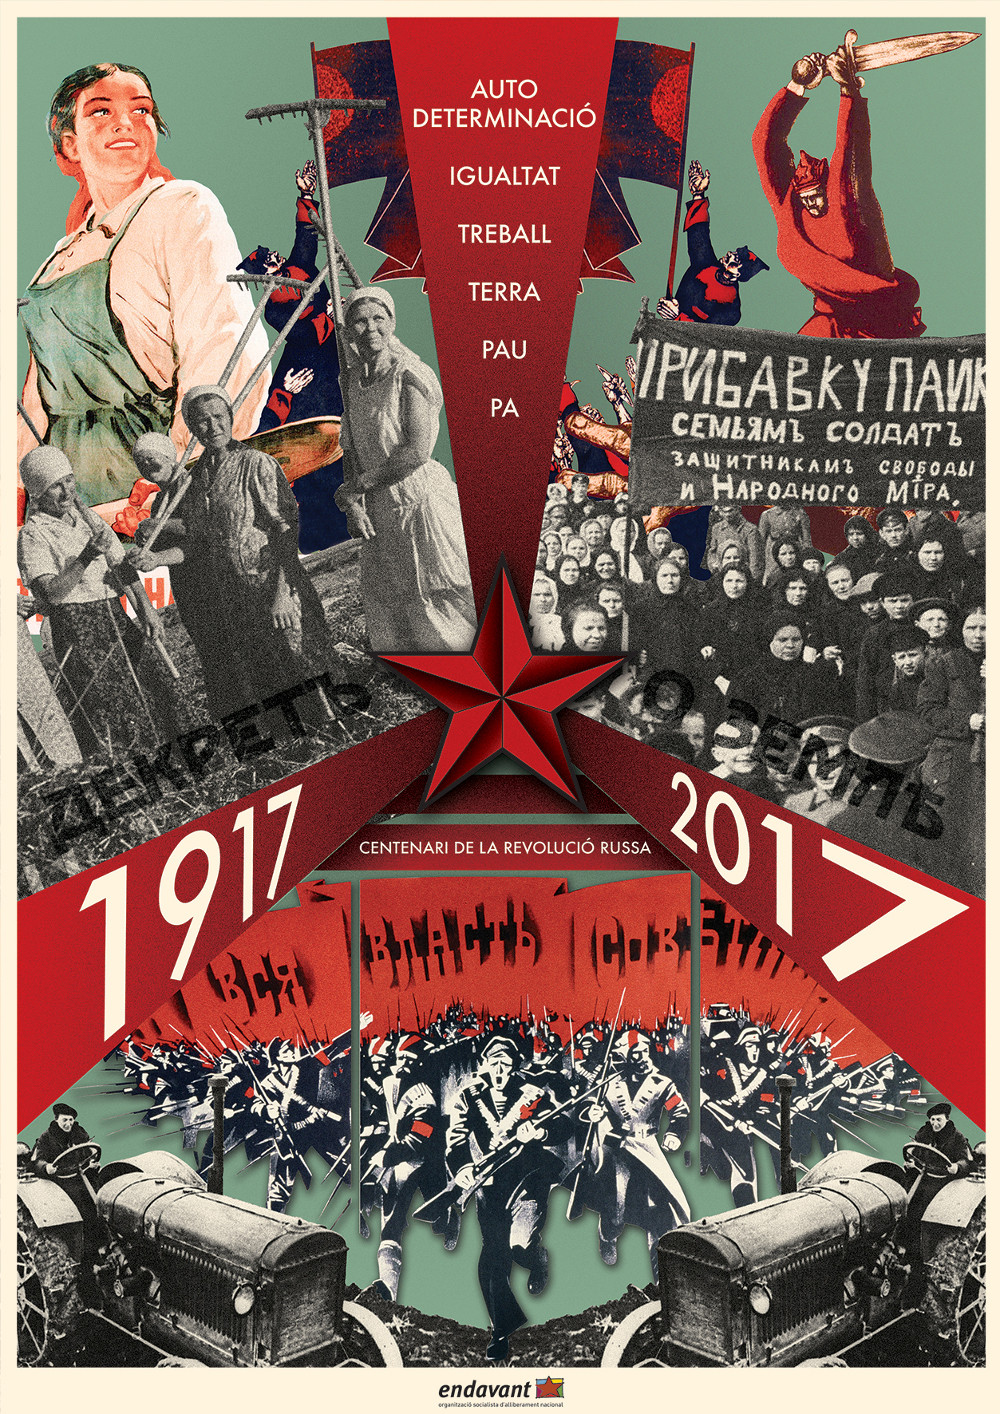 Autodeterminació, igualtat, treball, terra, pau i pa. Centenari de la Revolució Russa.